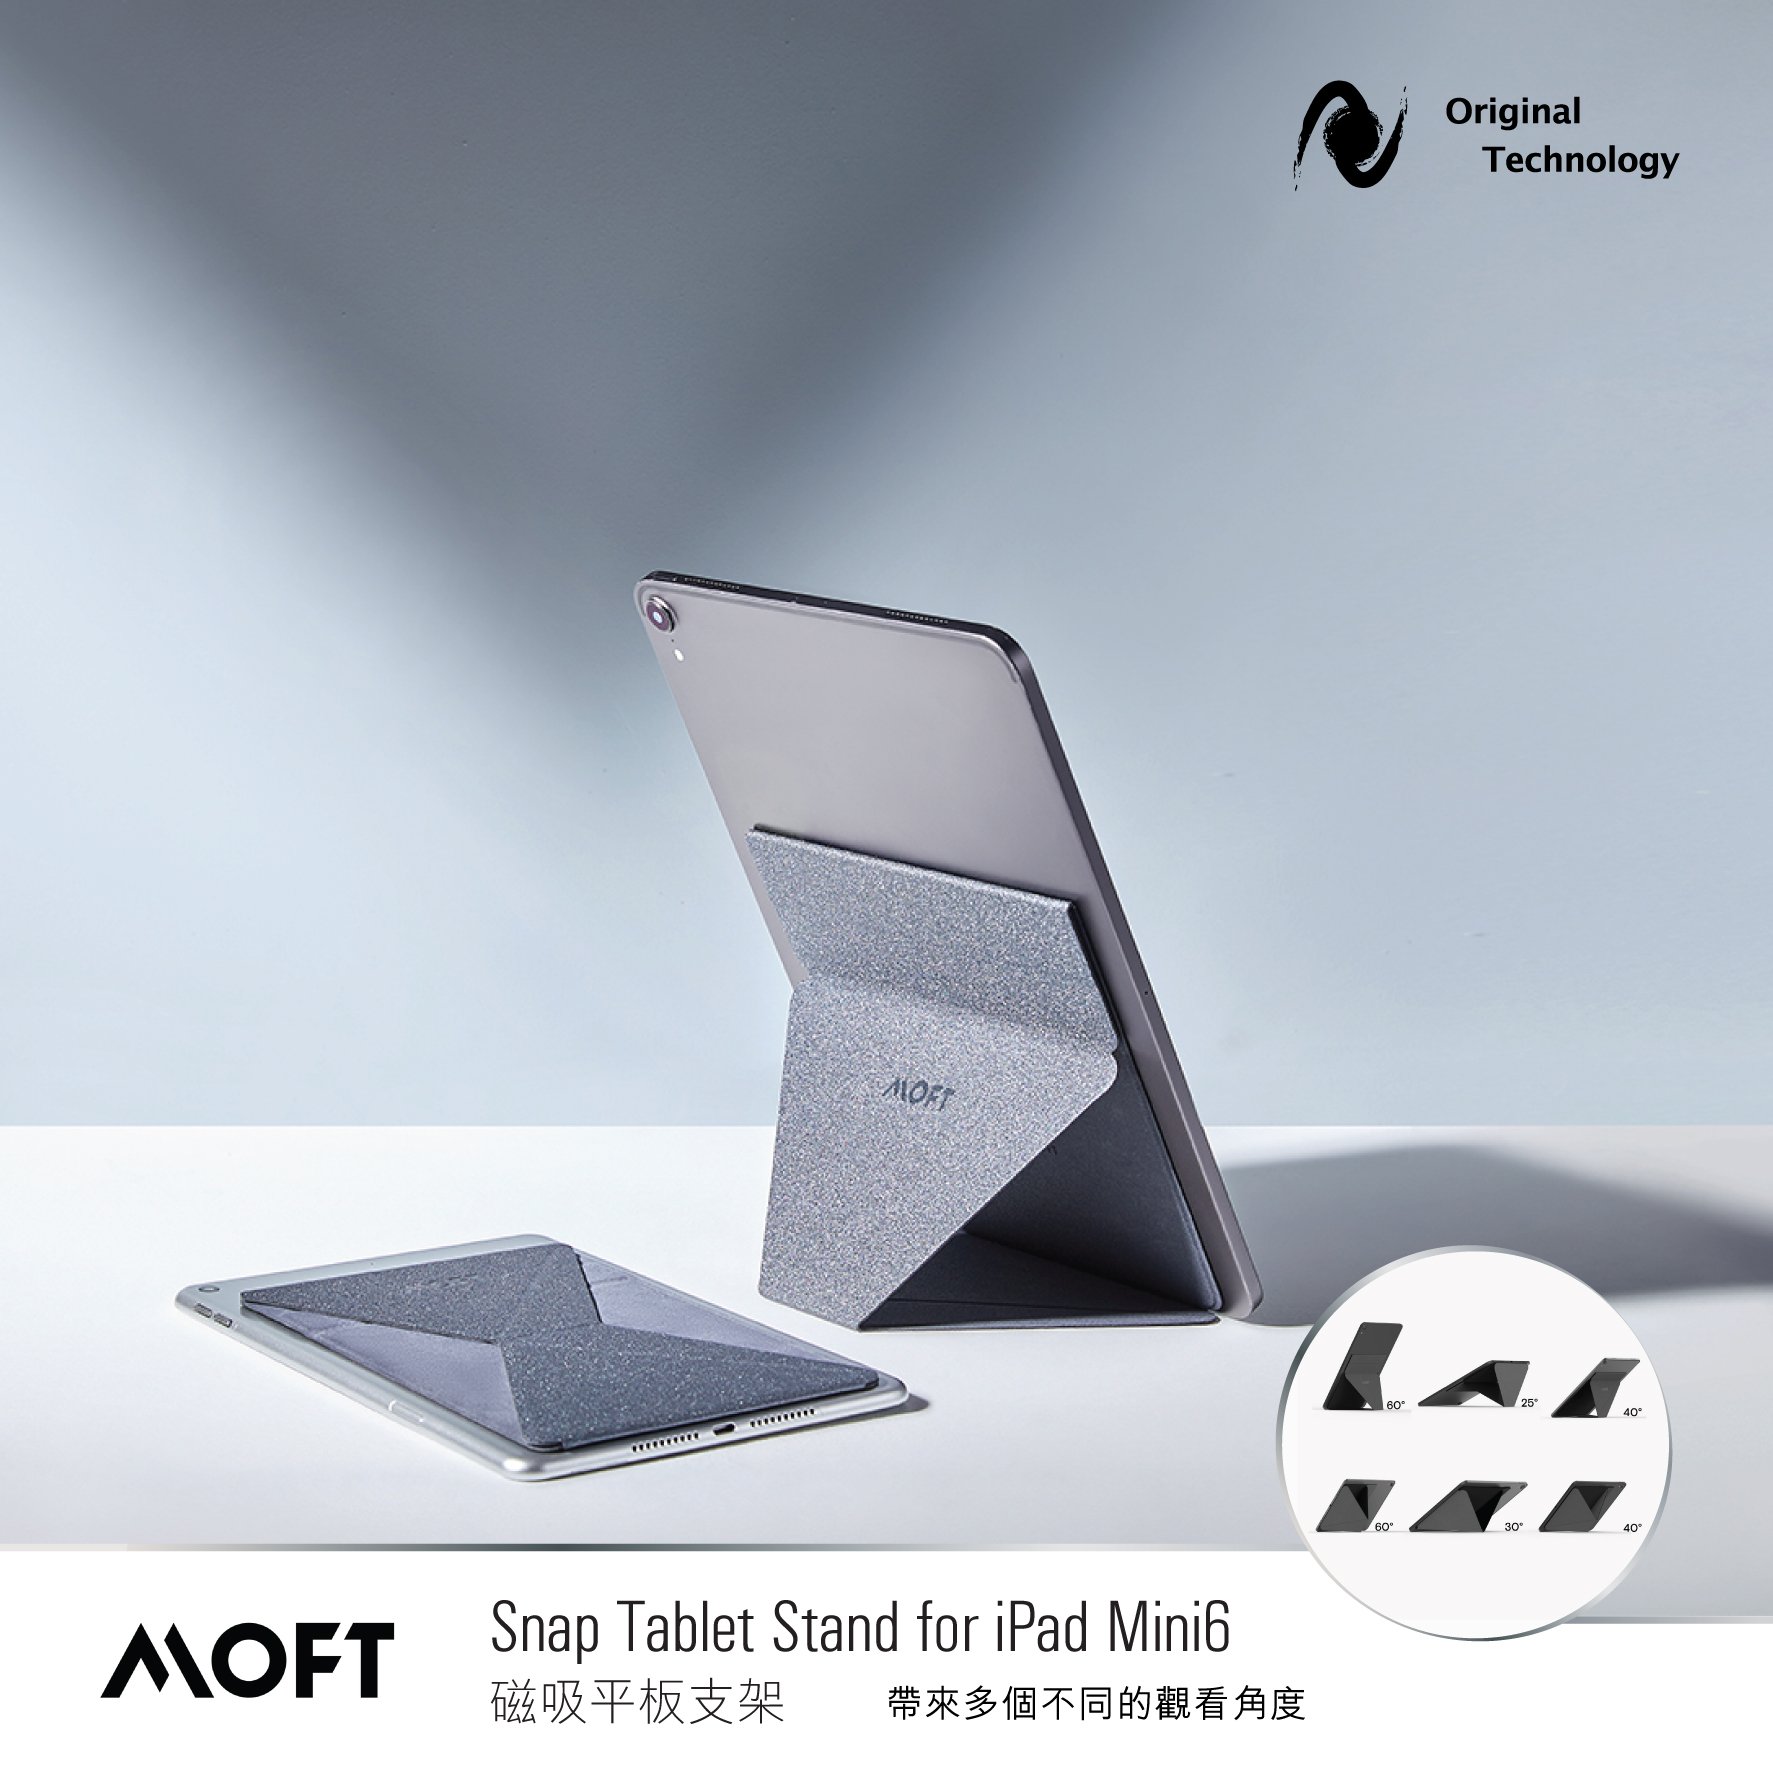 可以隱形收藏的 iPad 磁貼座 – MOFT Snap Tablet Stand